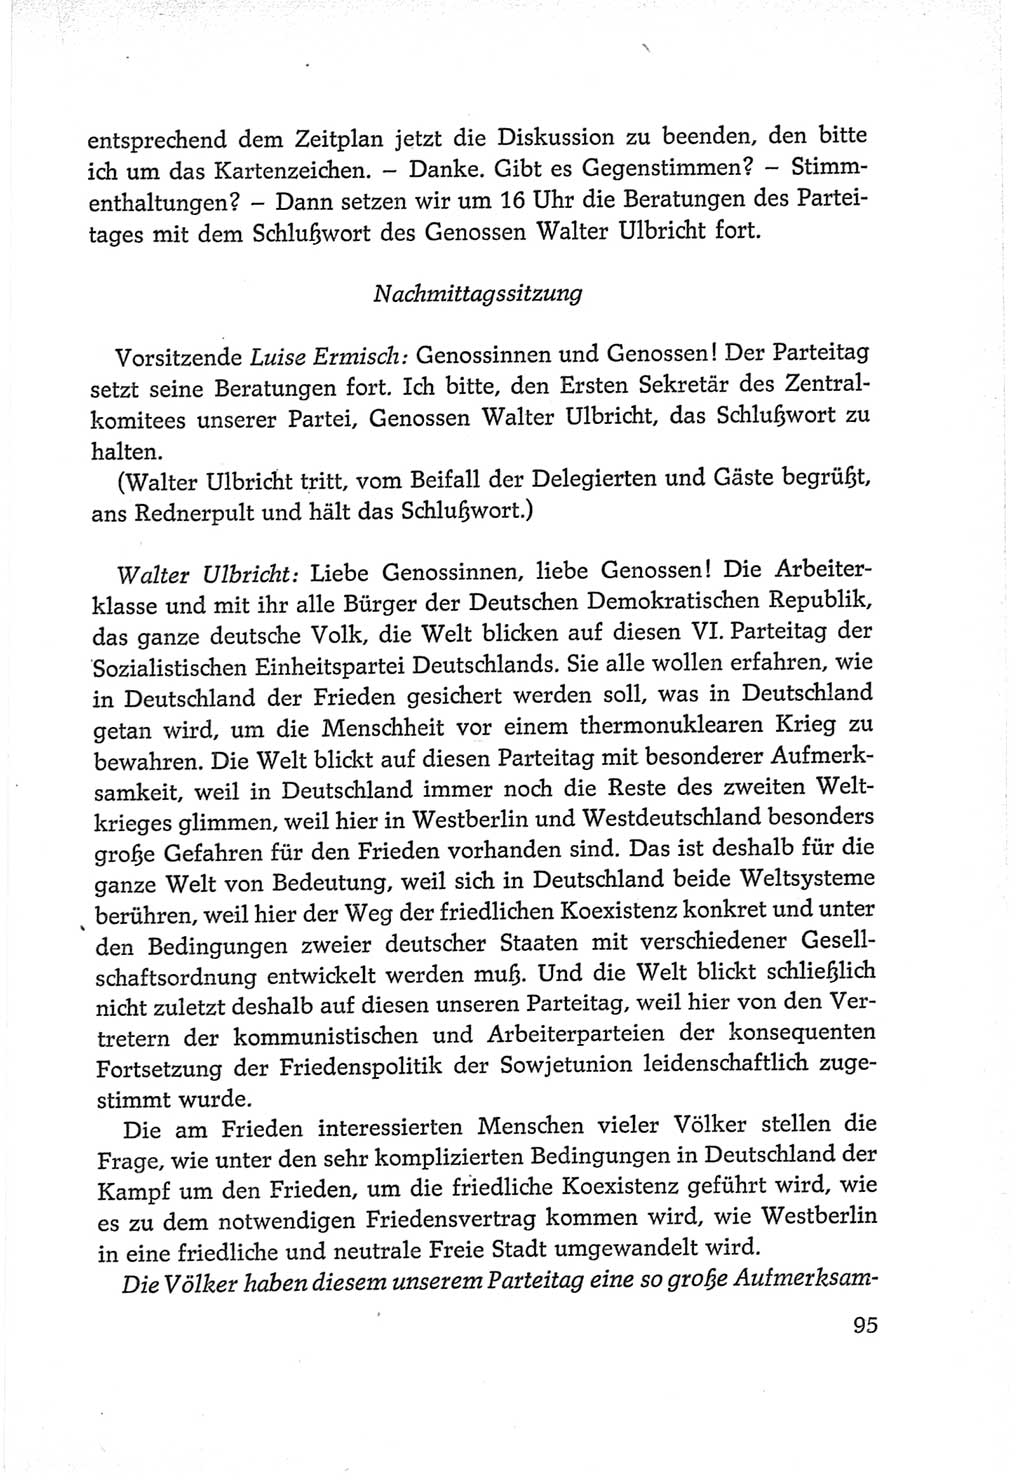 Protokoll der Verhandlungen des Ⅵ. Parteitages der Sozialistischen Einheitspartei Deutschlands (SED) [Deutsche Demokratische Republik (DDR)] 1963, Band Ⅱ, Seite 95 (Prot. Verh. Ⅵ. PT SED DDR 1963, Bd. Ⅱ, S. 95)